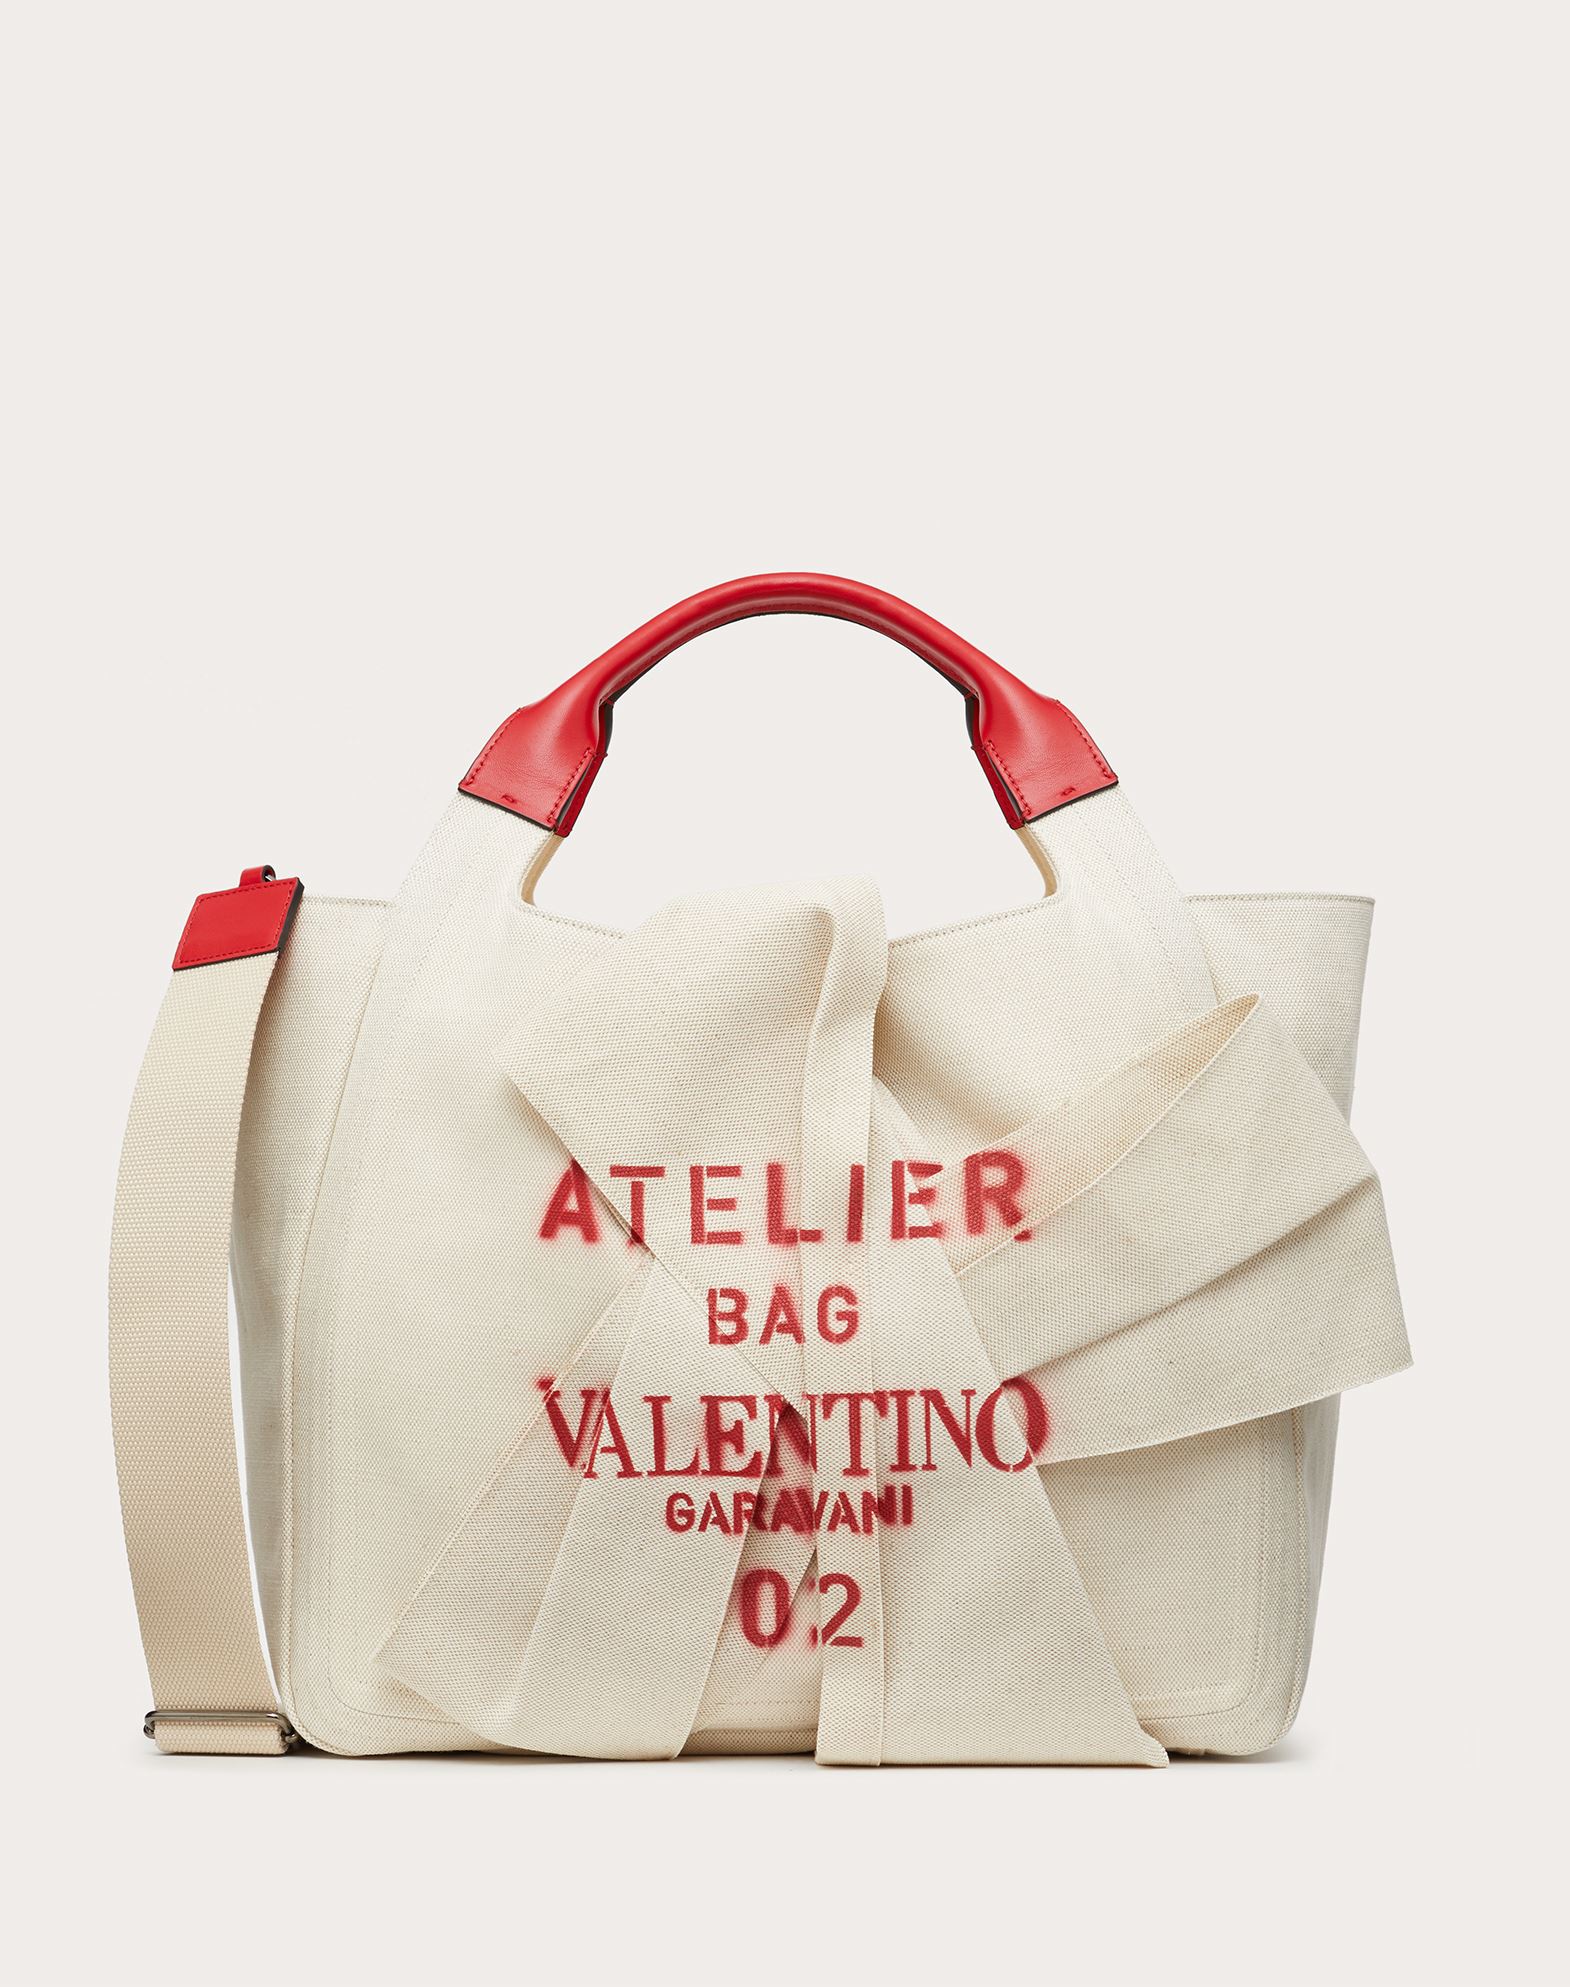 Valentino Garavani Small 05 Plisse Edition Atelier Tote Bag Natural, Tote